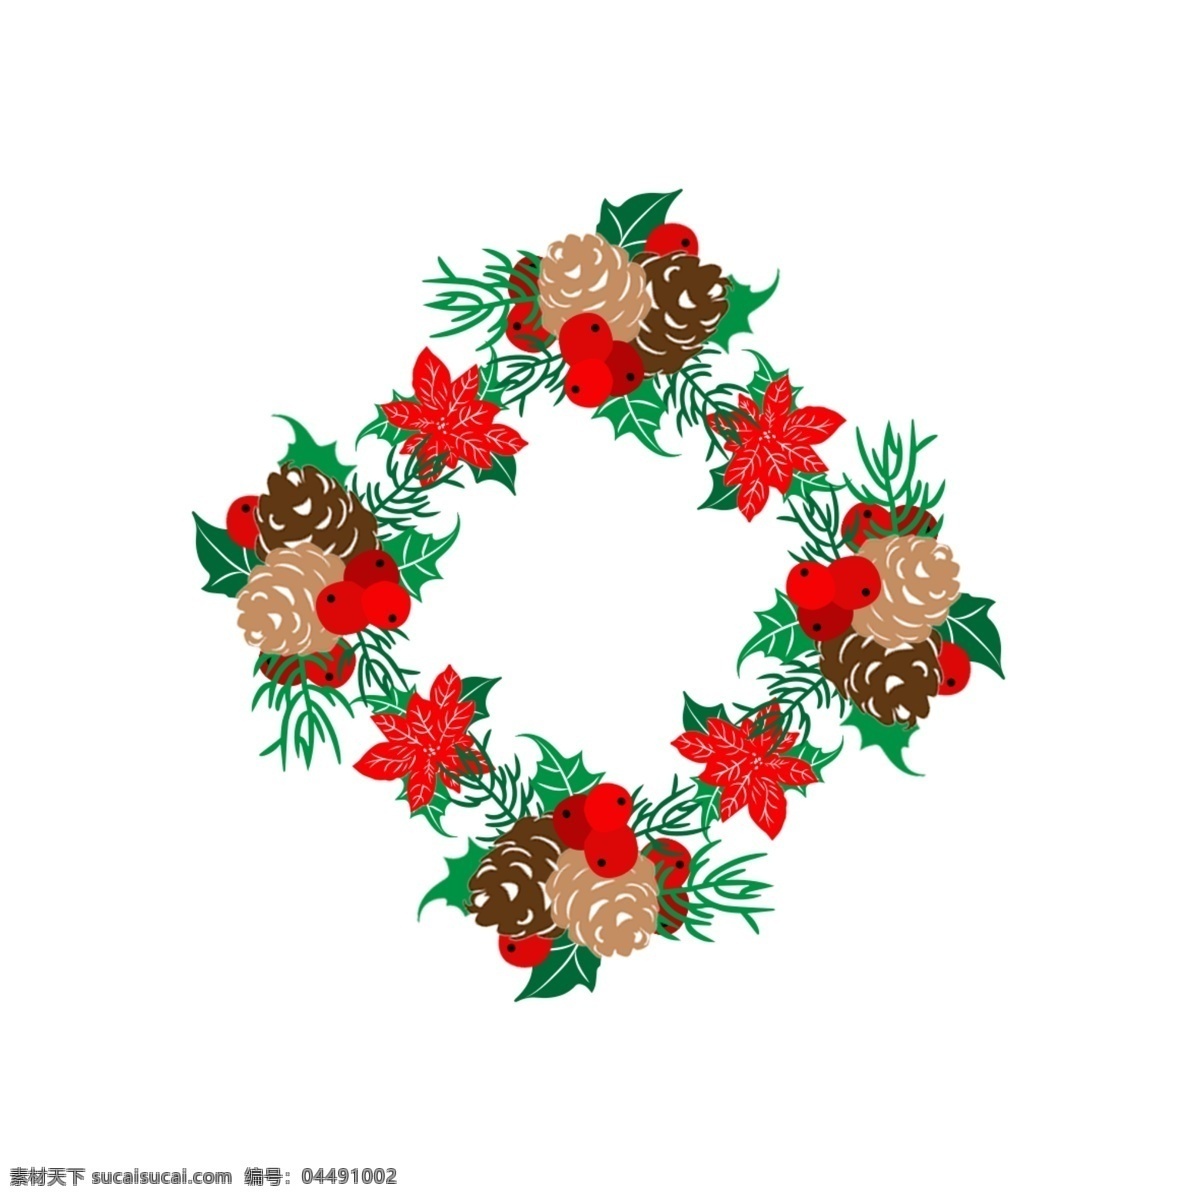 矢量 圣诞 元素 花环 圣诞元素 圣诞花环 装饰物 节日 圣诞花 元素花环